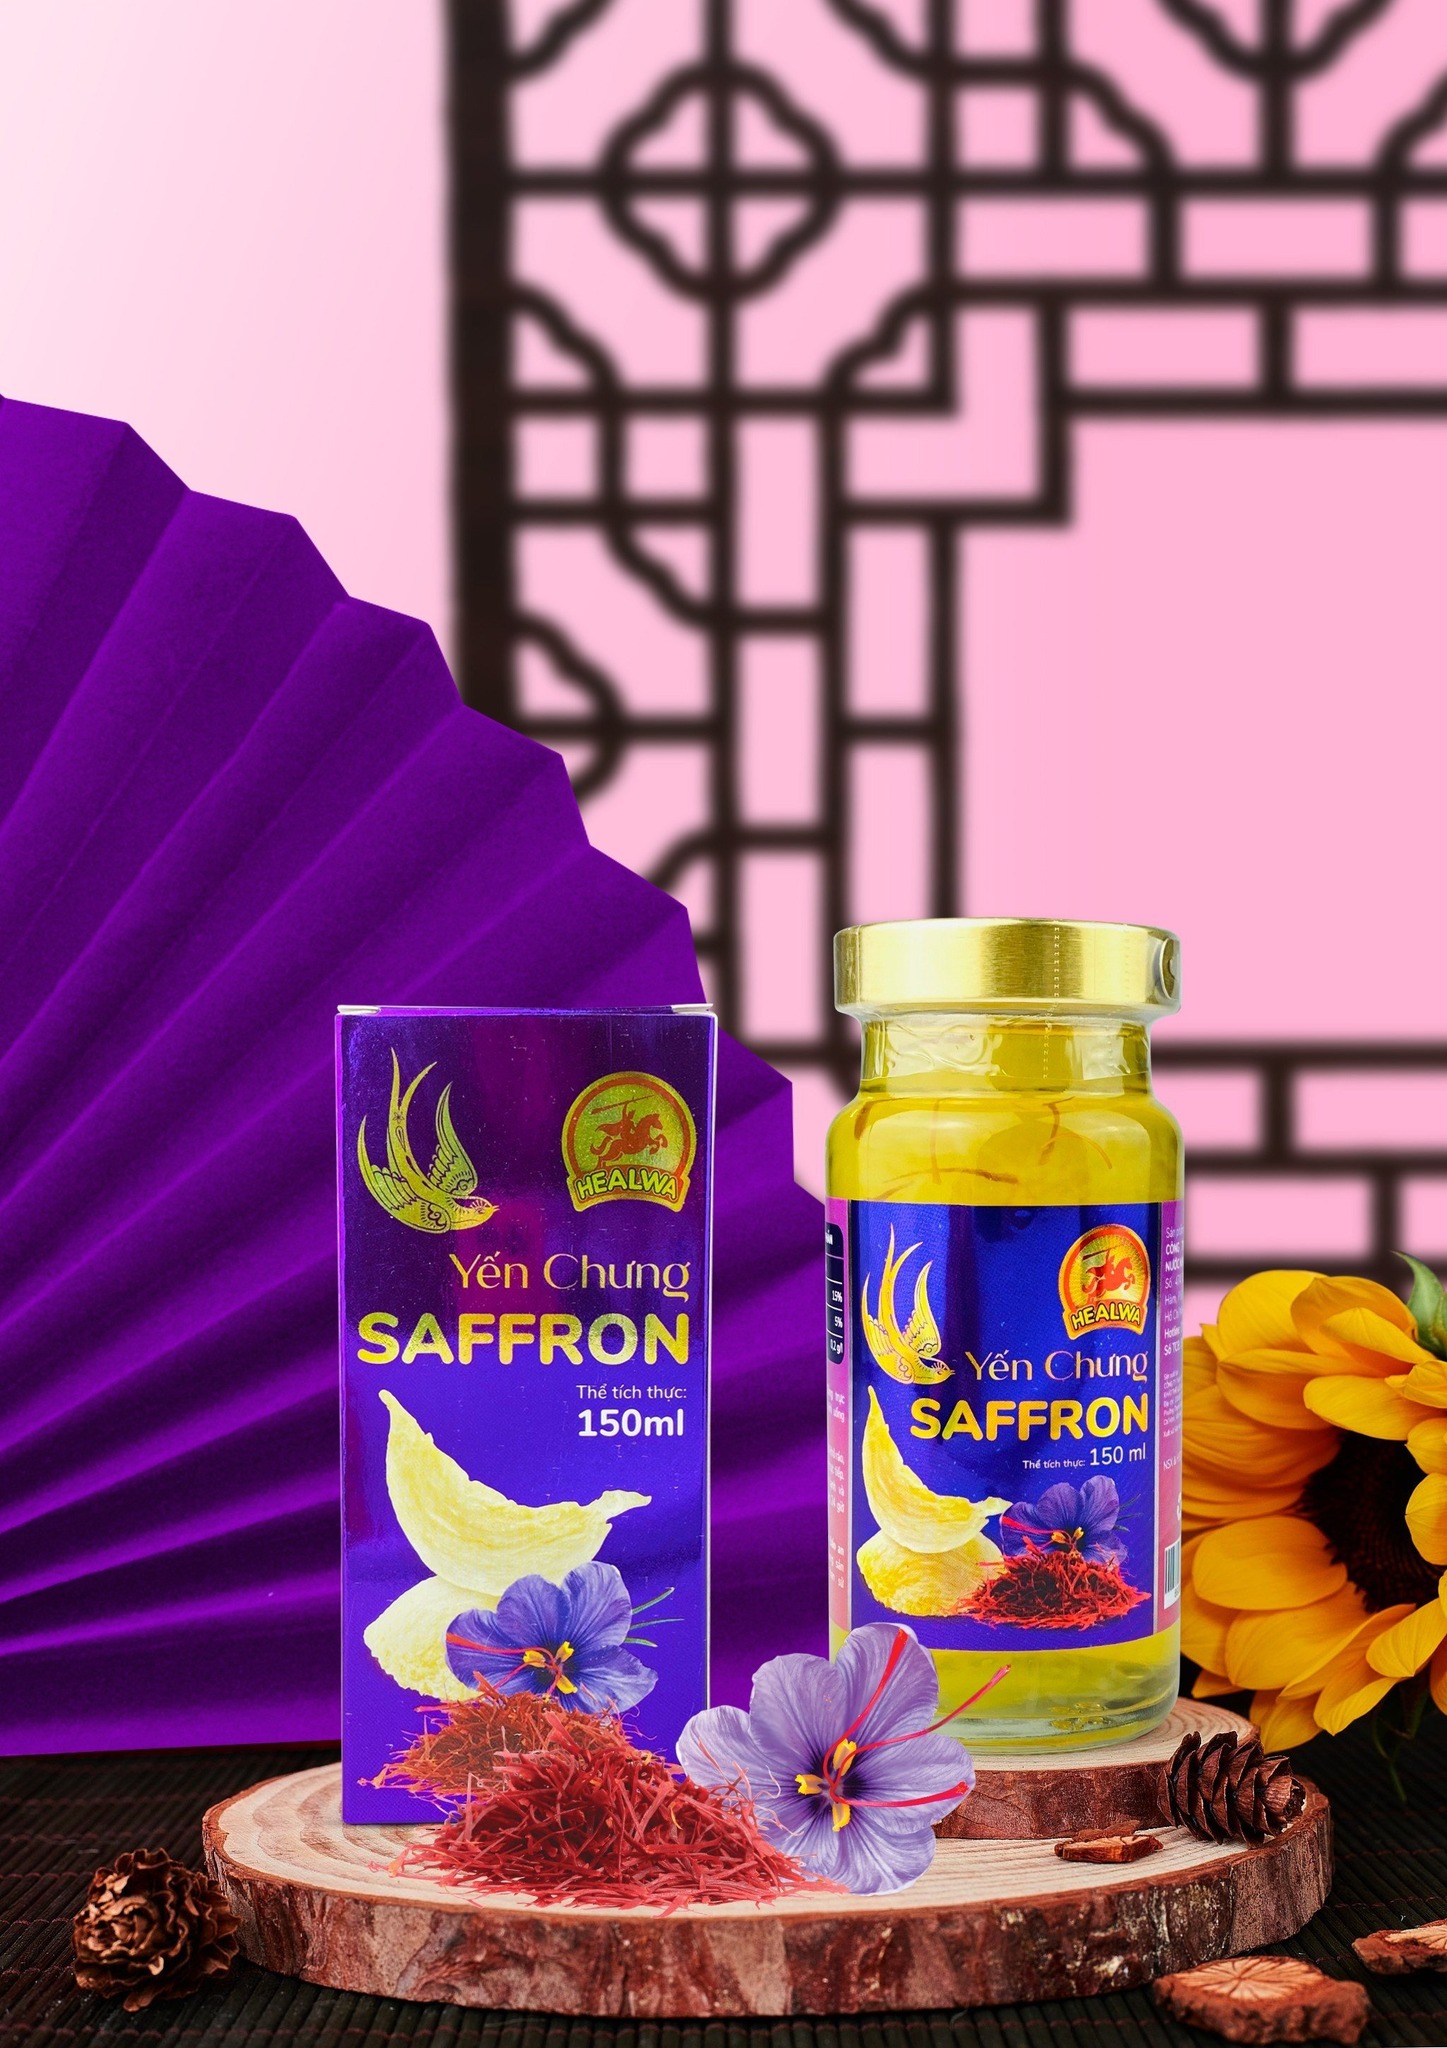 Bán yến chưng saffron cao cấp cho phụ nữ ở HCM freeship toàn quốc